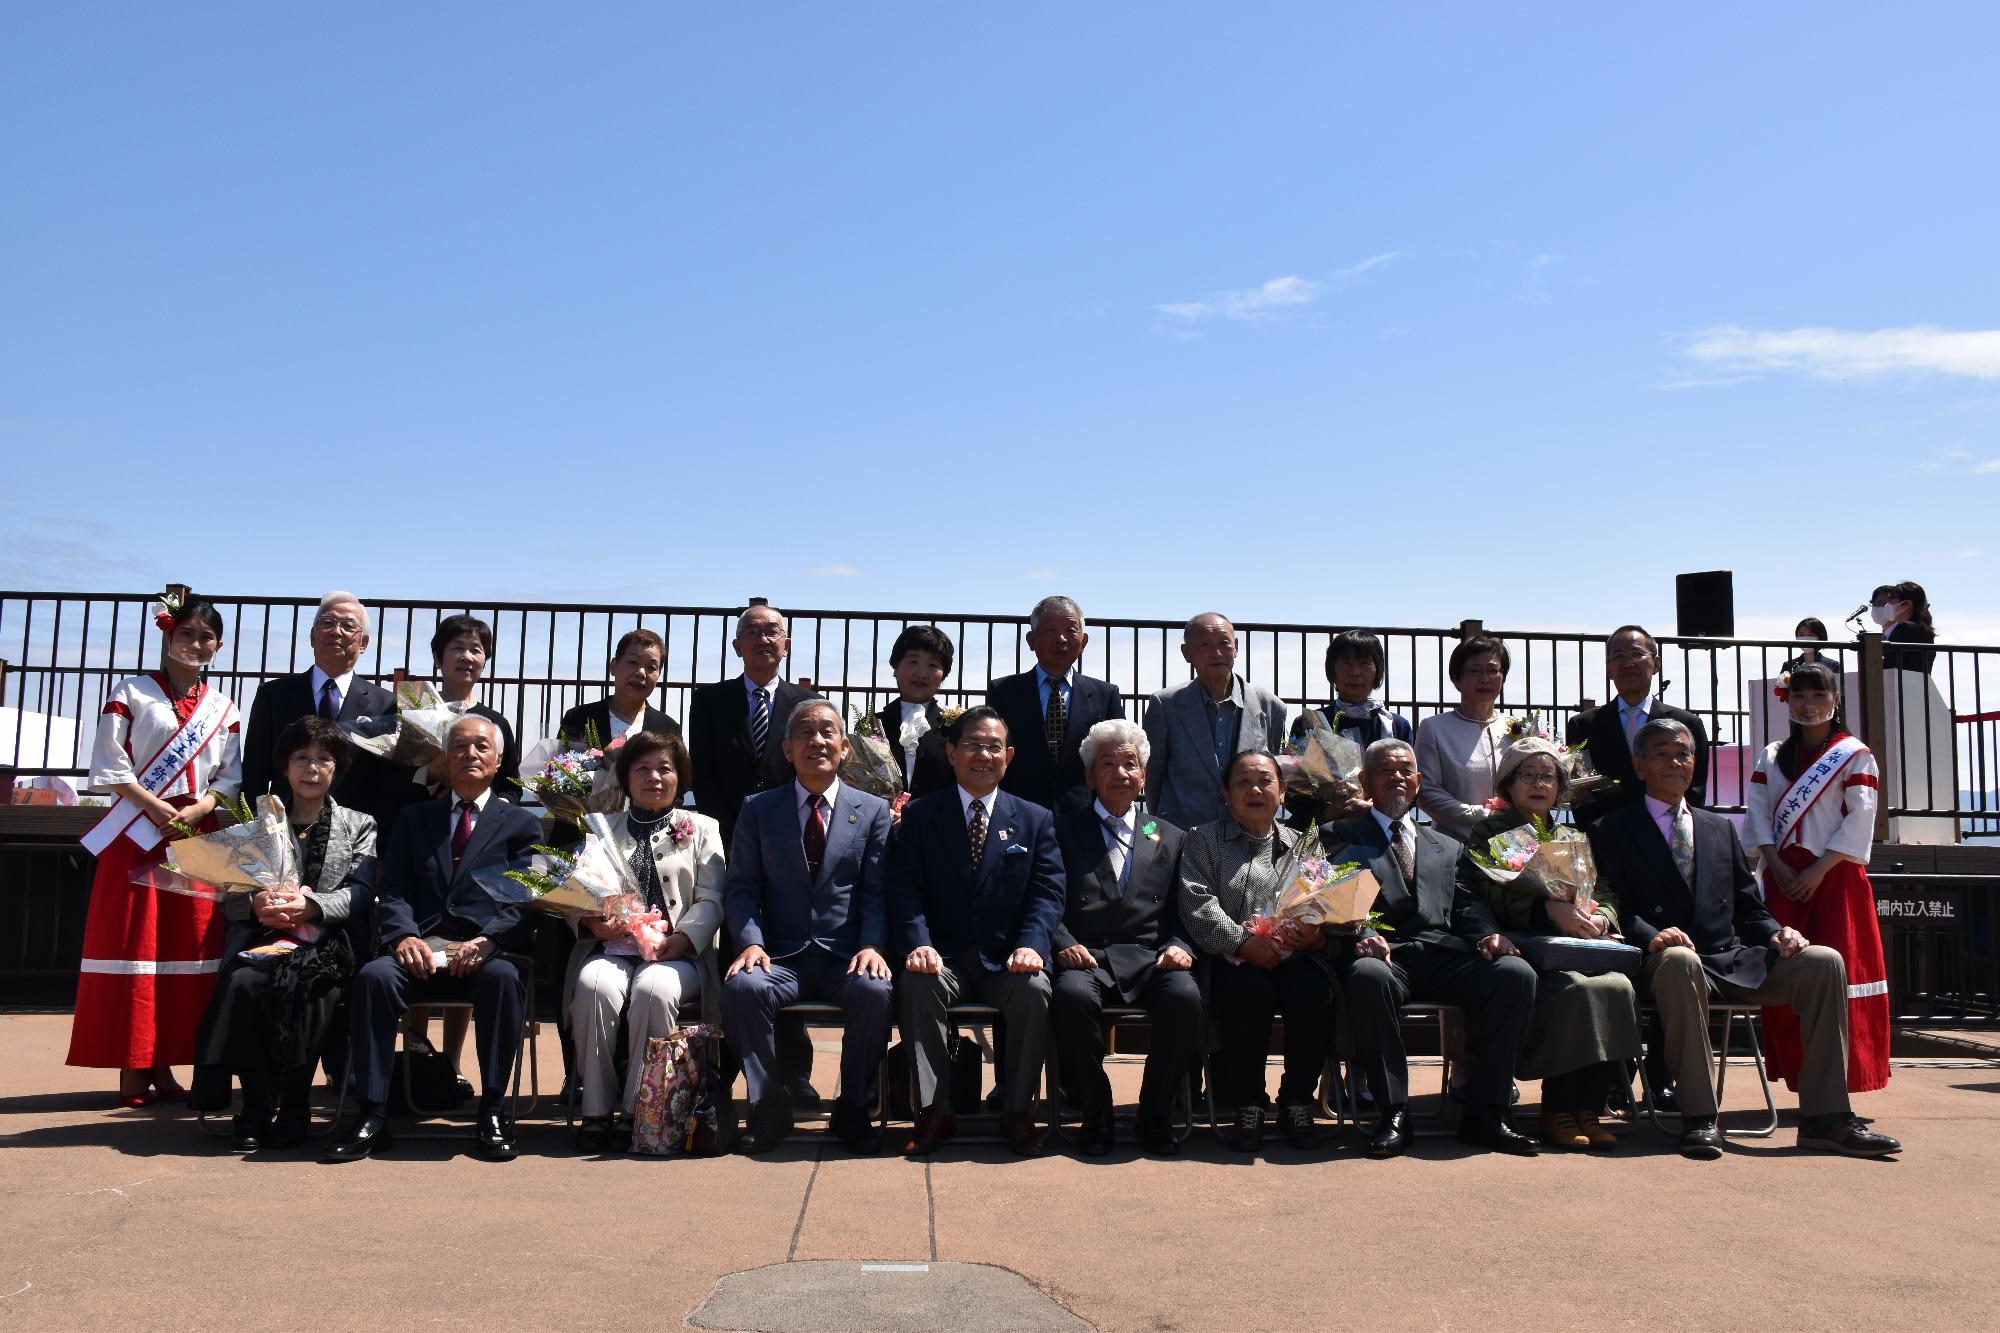 天守台展望施設で椅子に並んで座り記念撮影をする金婚式参加者夫婦9組と市長、女王卑弥呼の二人